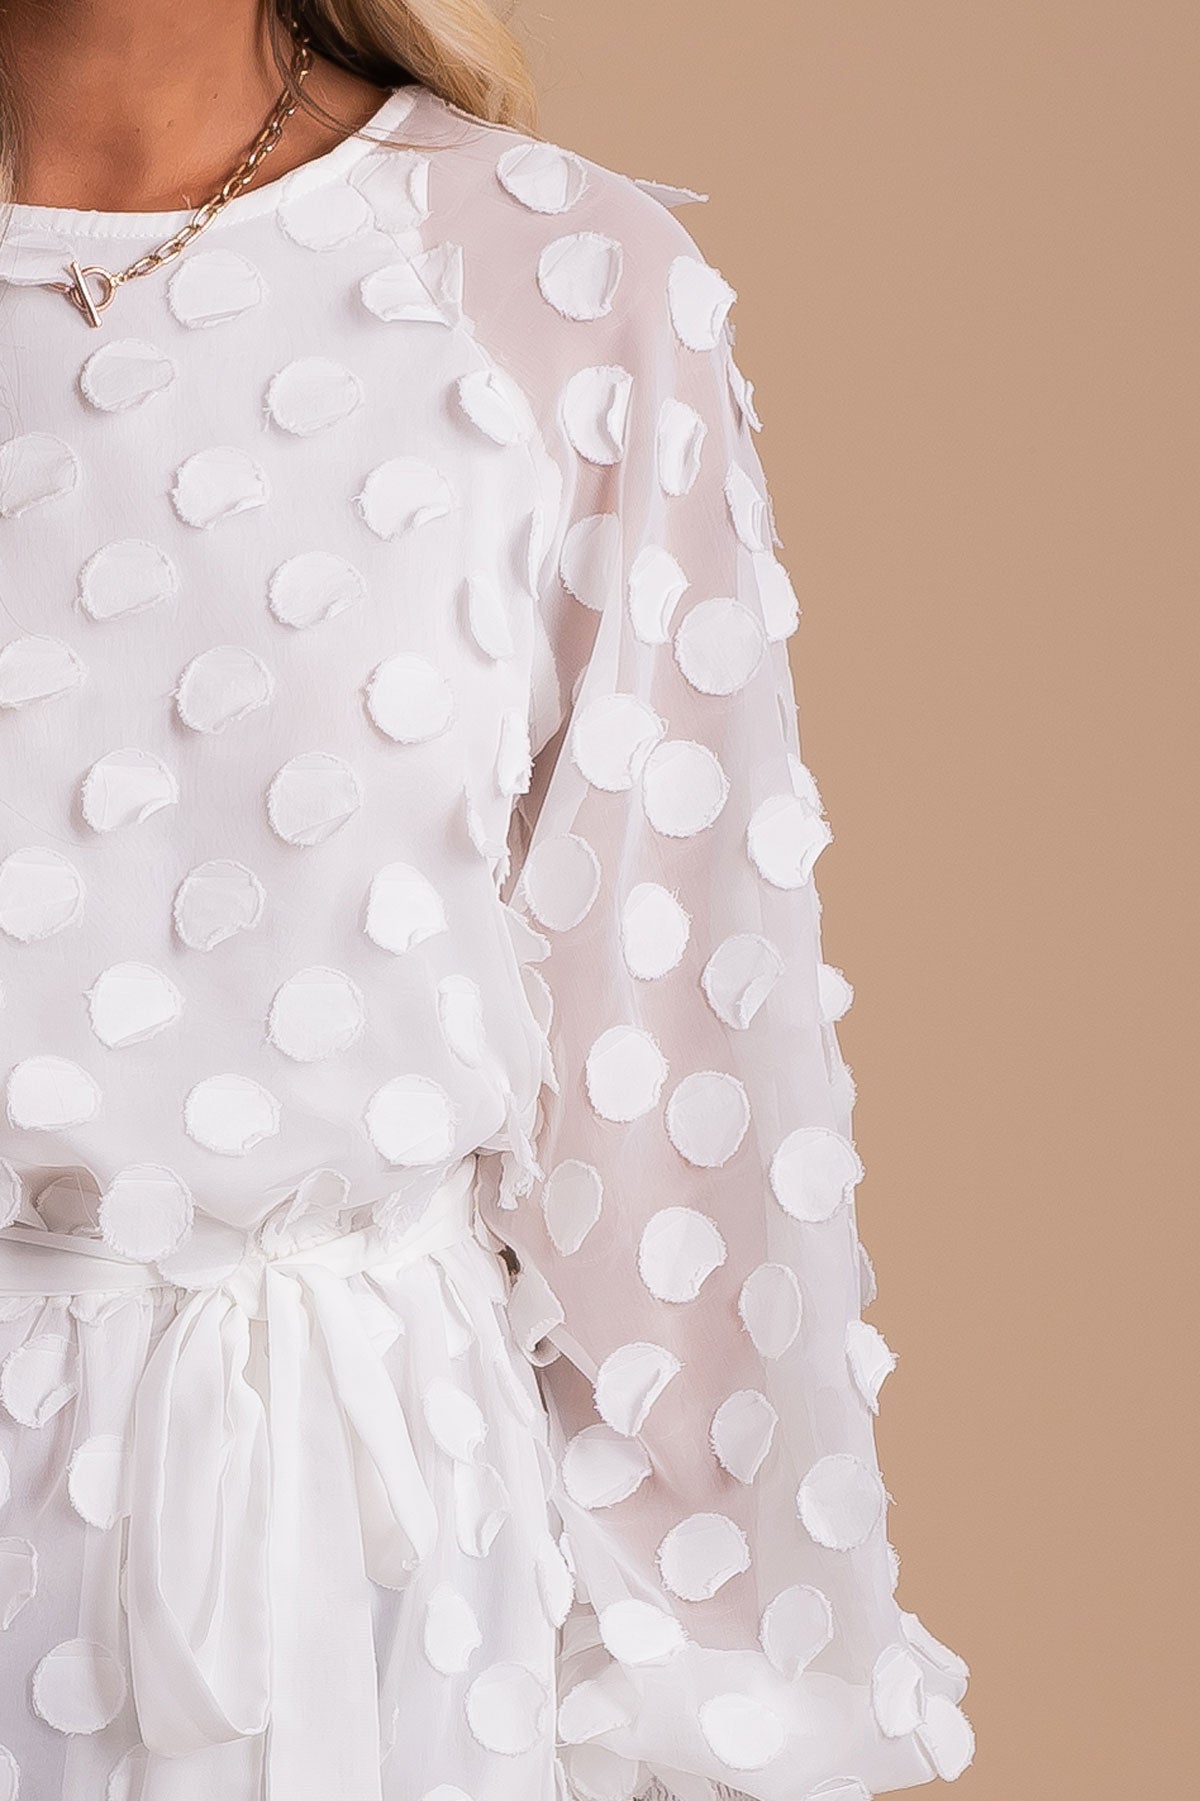 women's sheer polka dot long sleeved summer mini dress